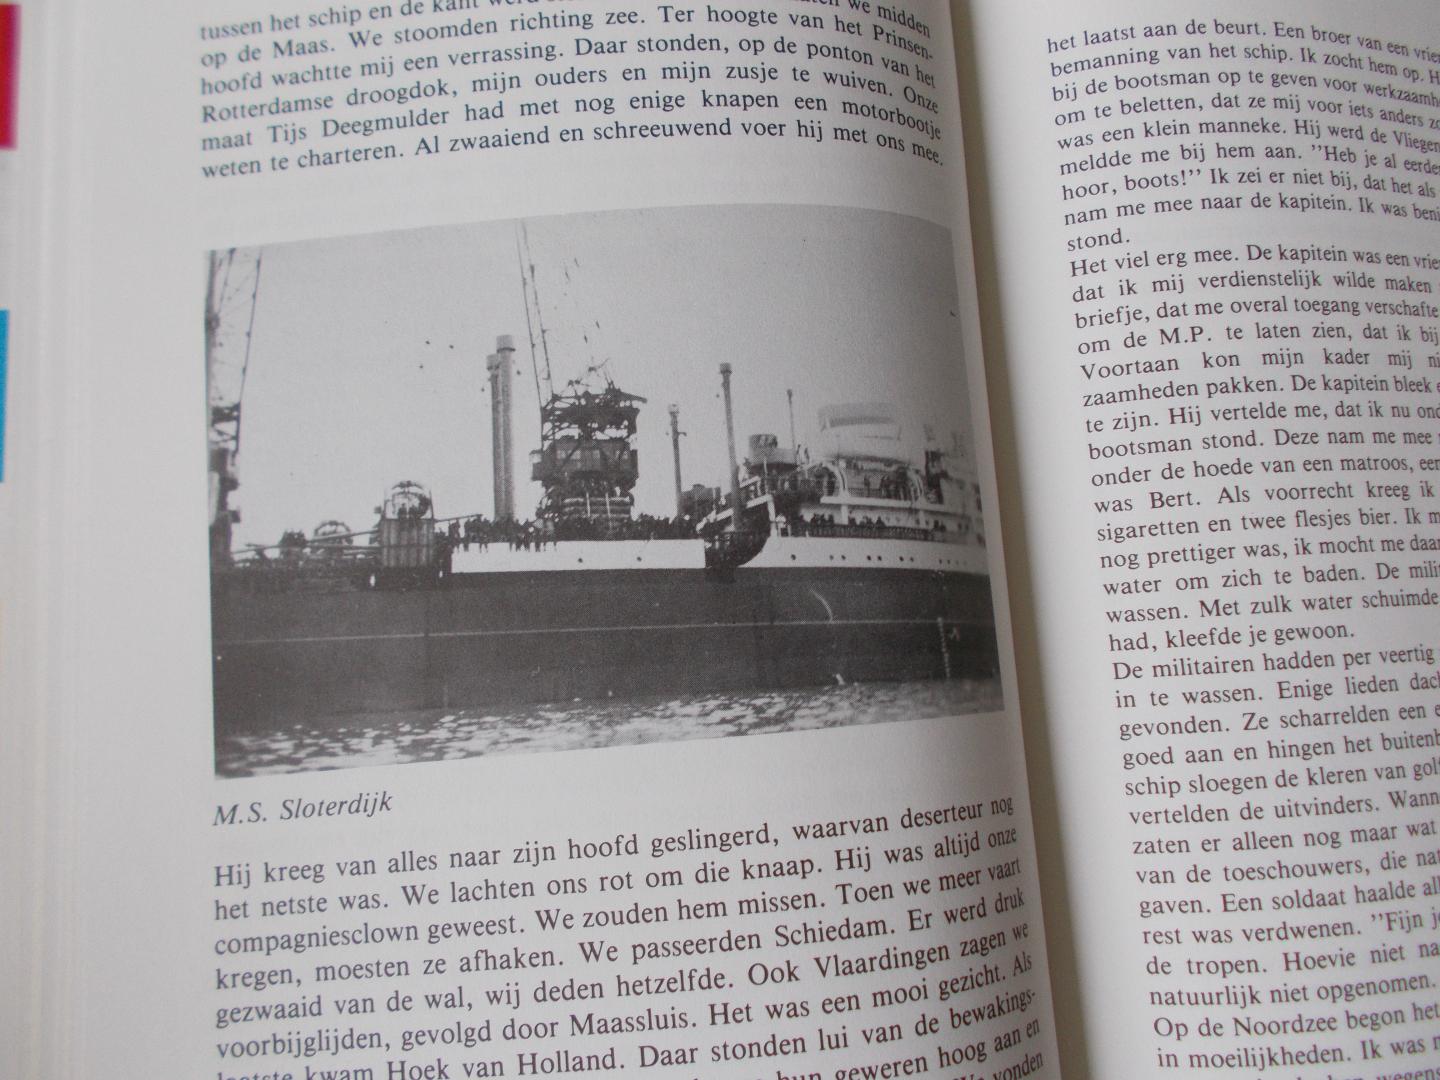 Moraal, Willem - Mariniers in aktie op Oost/Java. Met zware marsbepakking, memoires van Willem Moraal uit 1946-1949, bewerkt door Jaap Venken